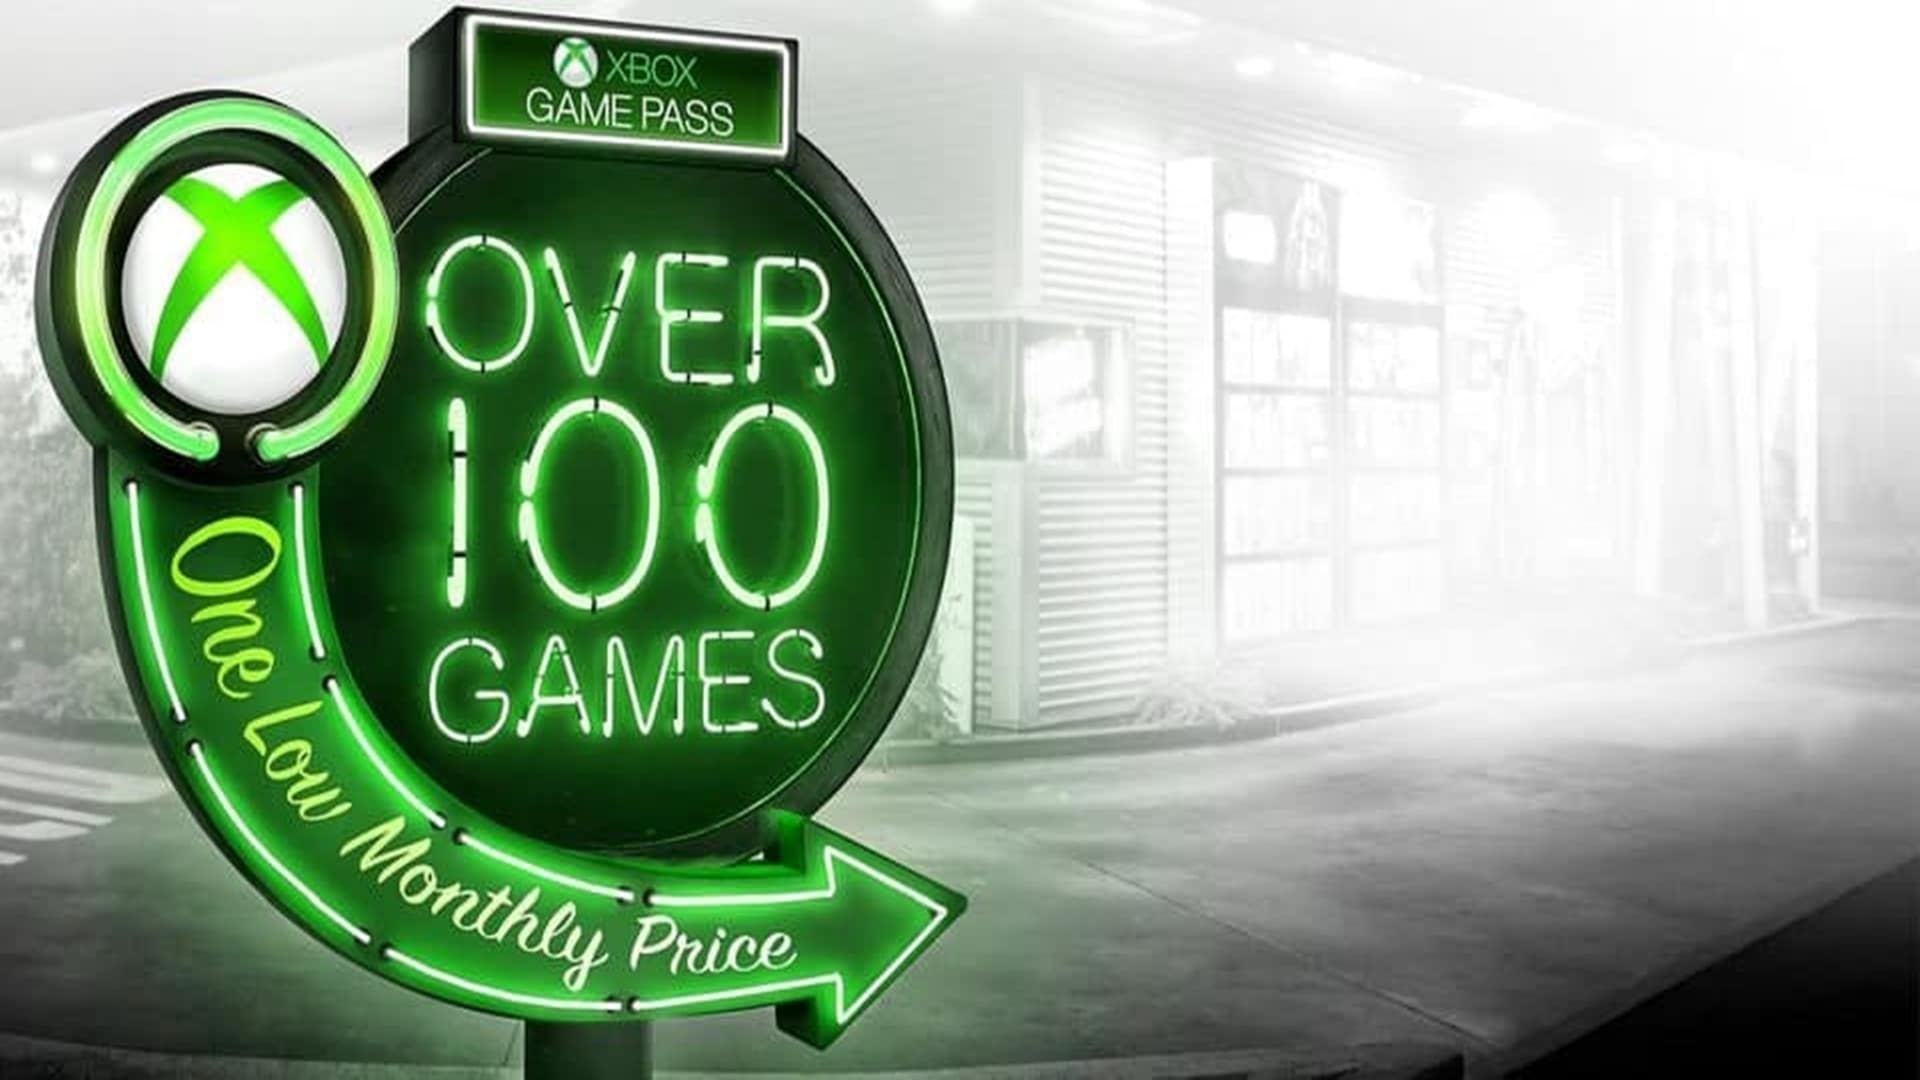 Xbox Game Pass confirma 2 juegos más para junio de 2022, GamersRD